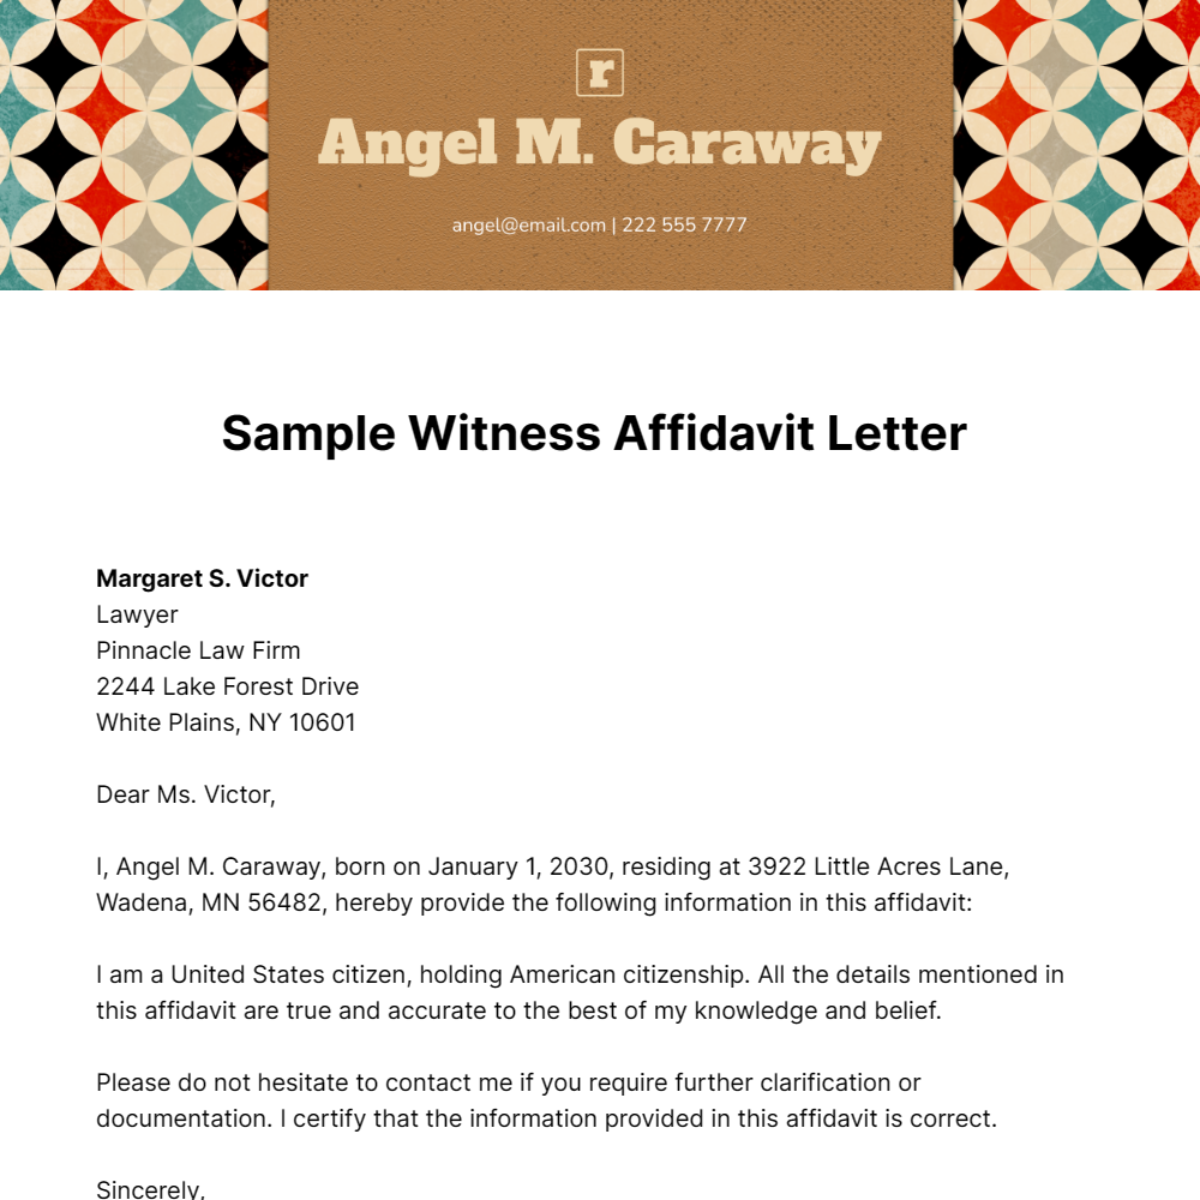 Sample Witness Affidavit Letter   Template